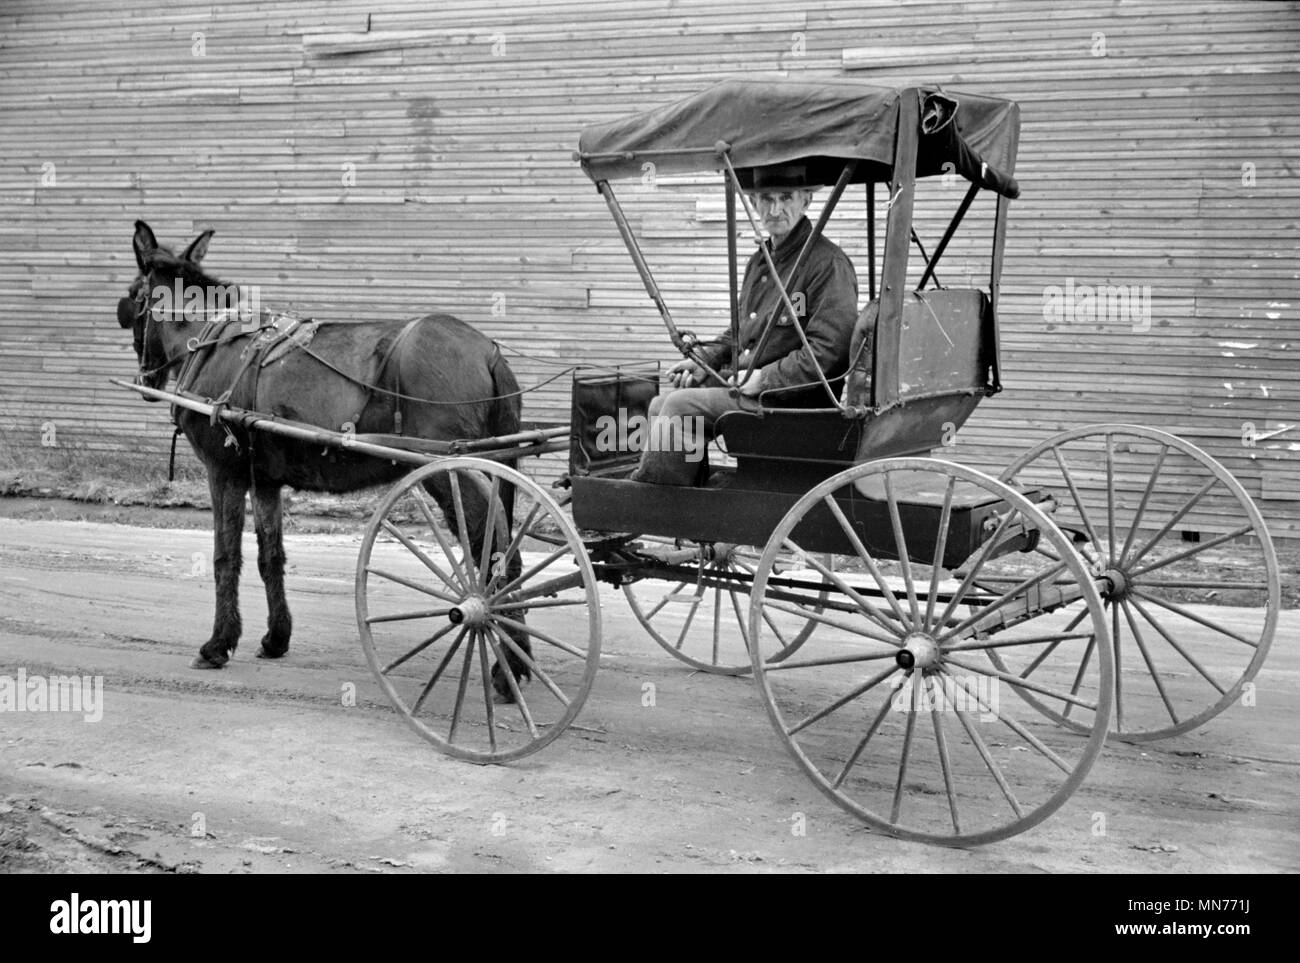 Uomo e Horse-Drawn Buggy, Hoffman, North Carolina, Stati Uniti d'America, Carl Mydans, U.S. Amministrazione di reinsediamento, Marzo 1936 Foto Stock